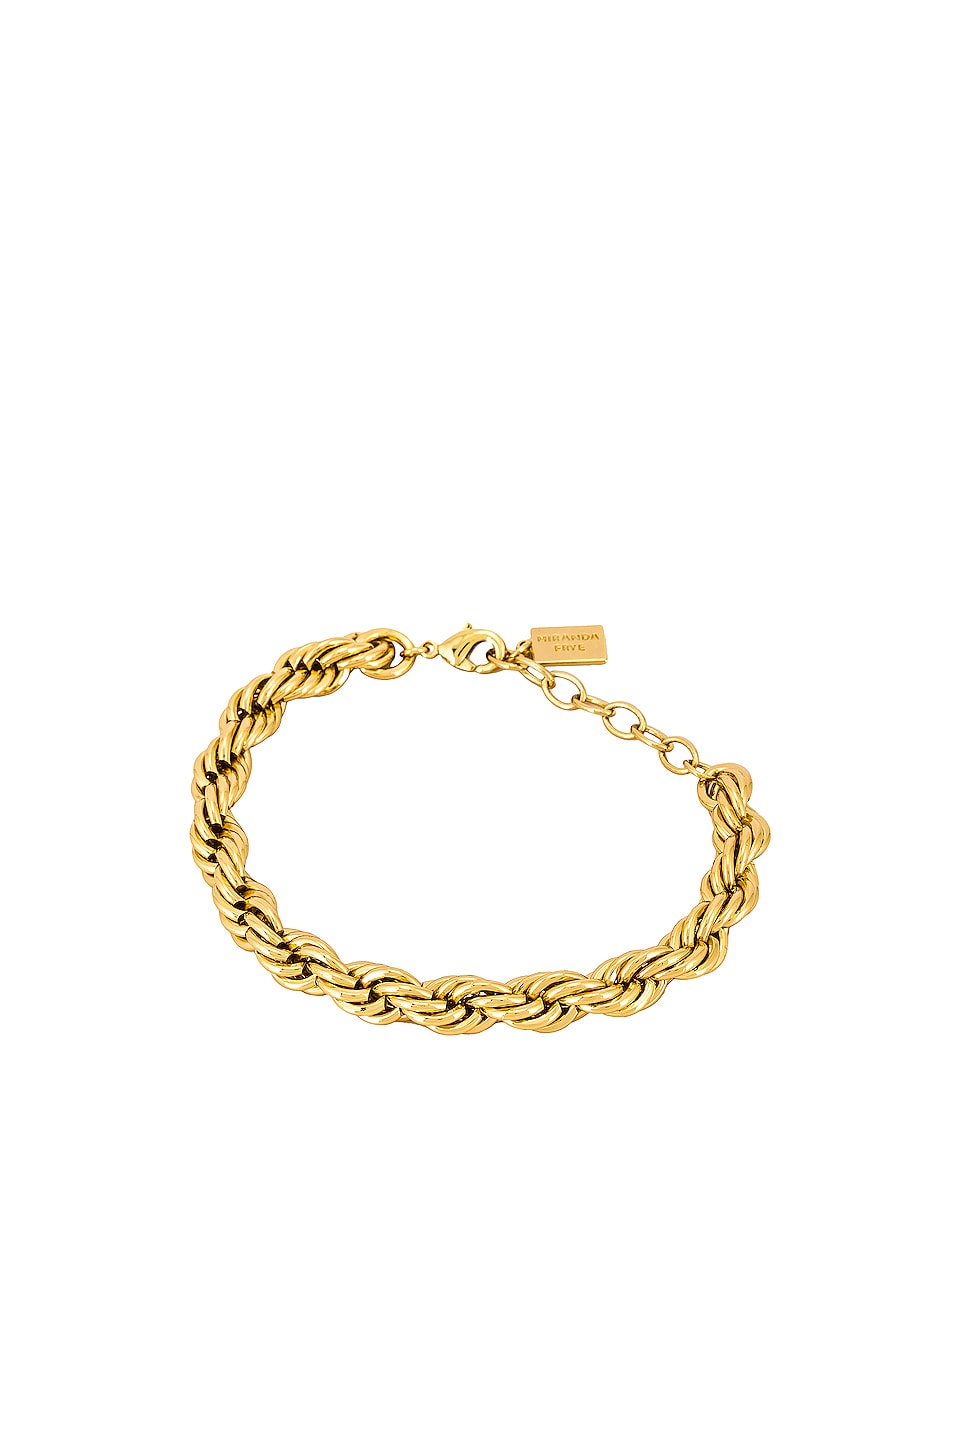 MIRANDA FRYE Sloane Bracelet in Gold | REVOLVE